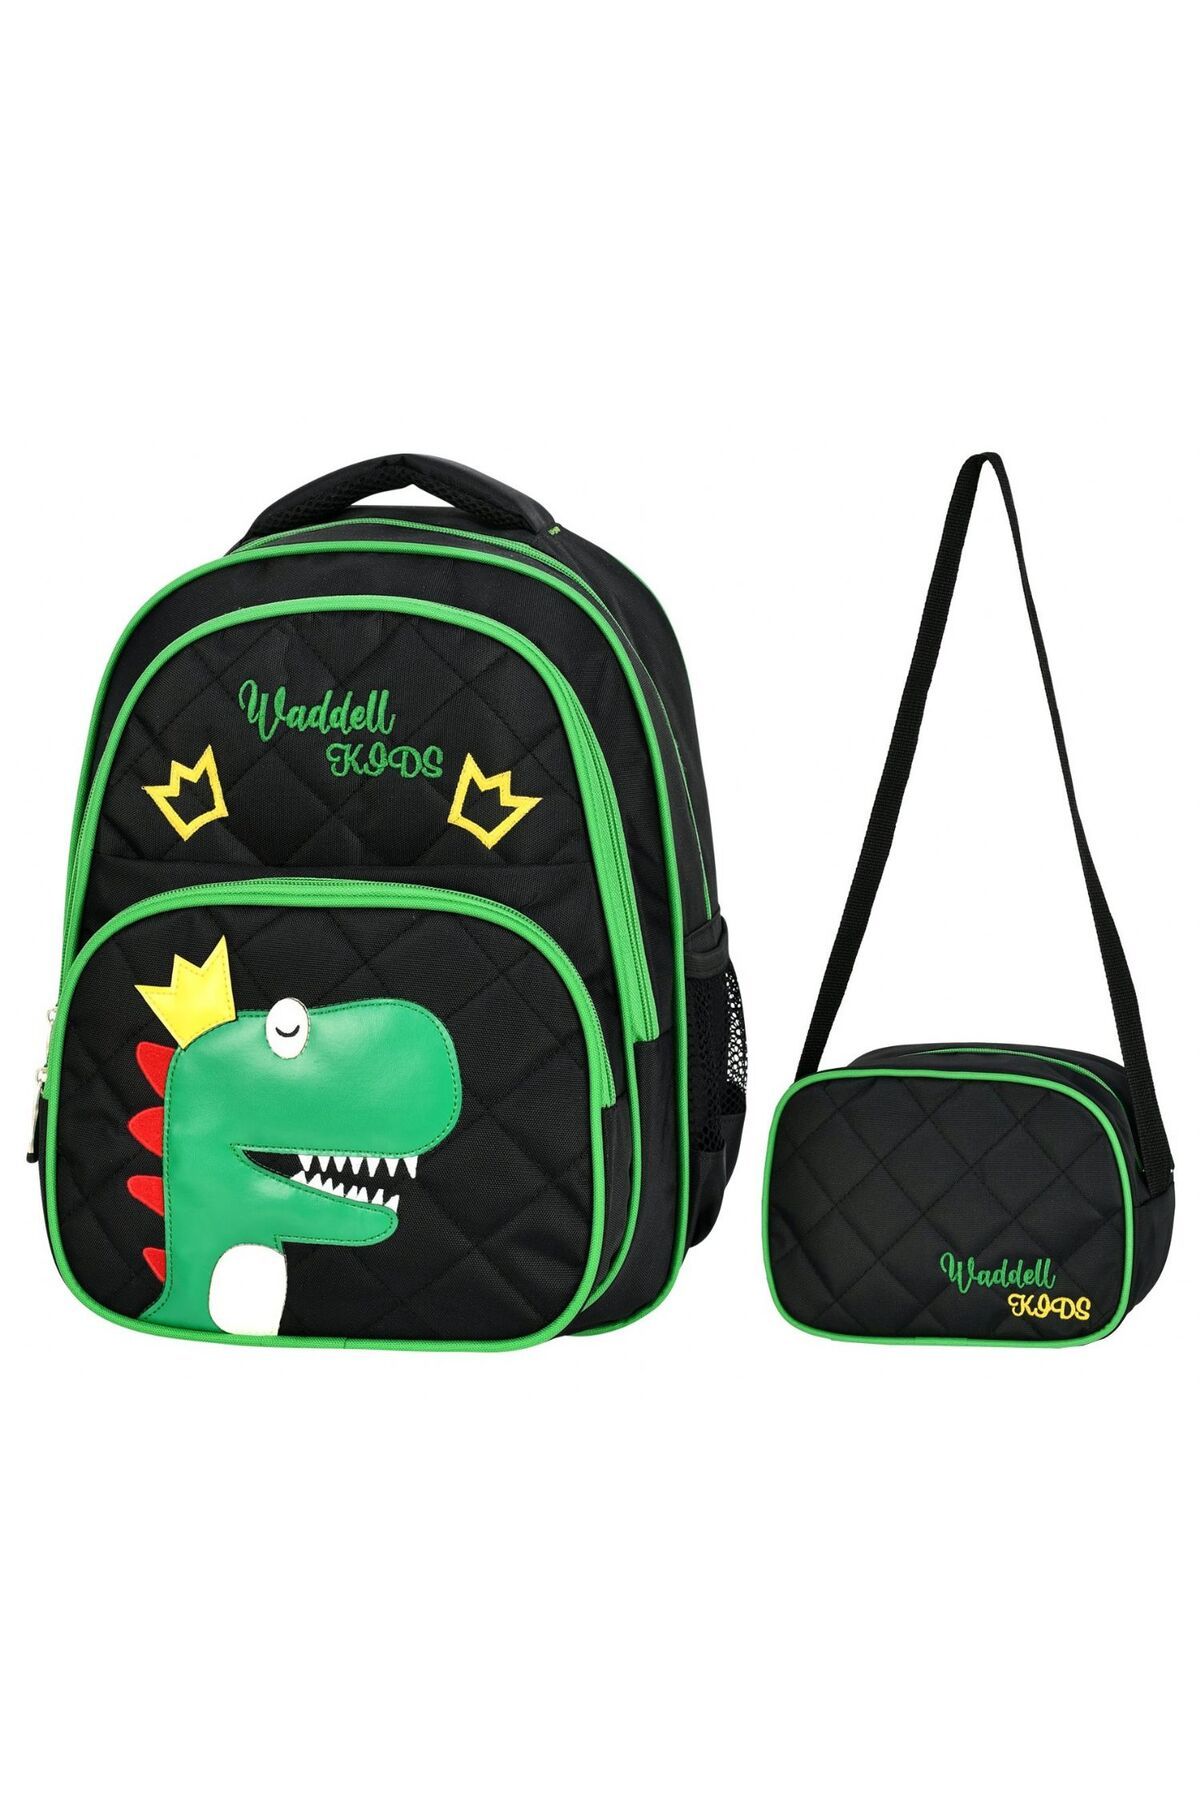 Puzmo Waddell Siyah Yeşil Dinazor Baskılı Ilkokul Çantası - Waddell Bag Okul Çanta Seti - Kız Çocuk